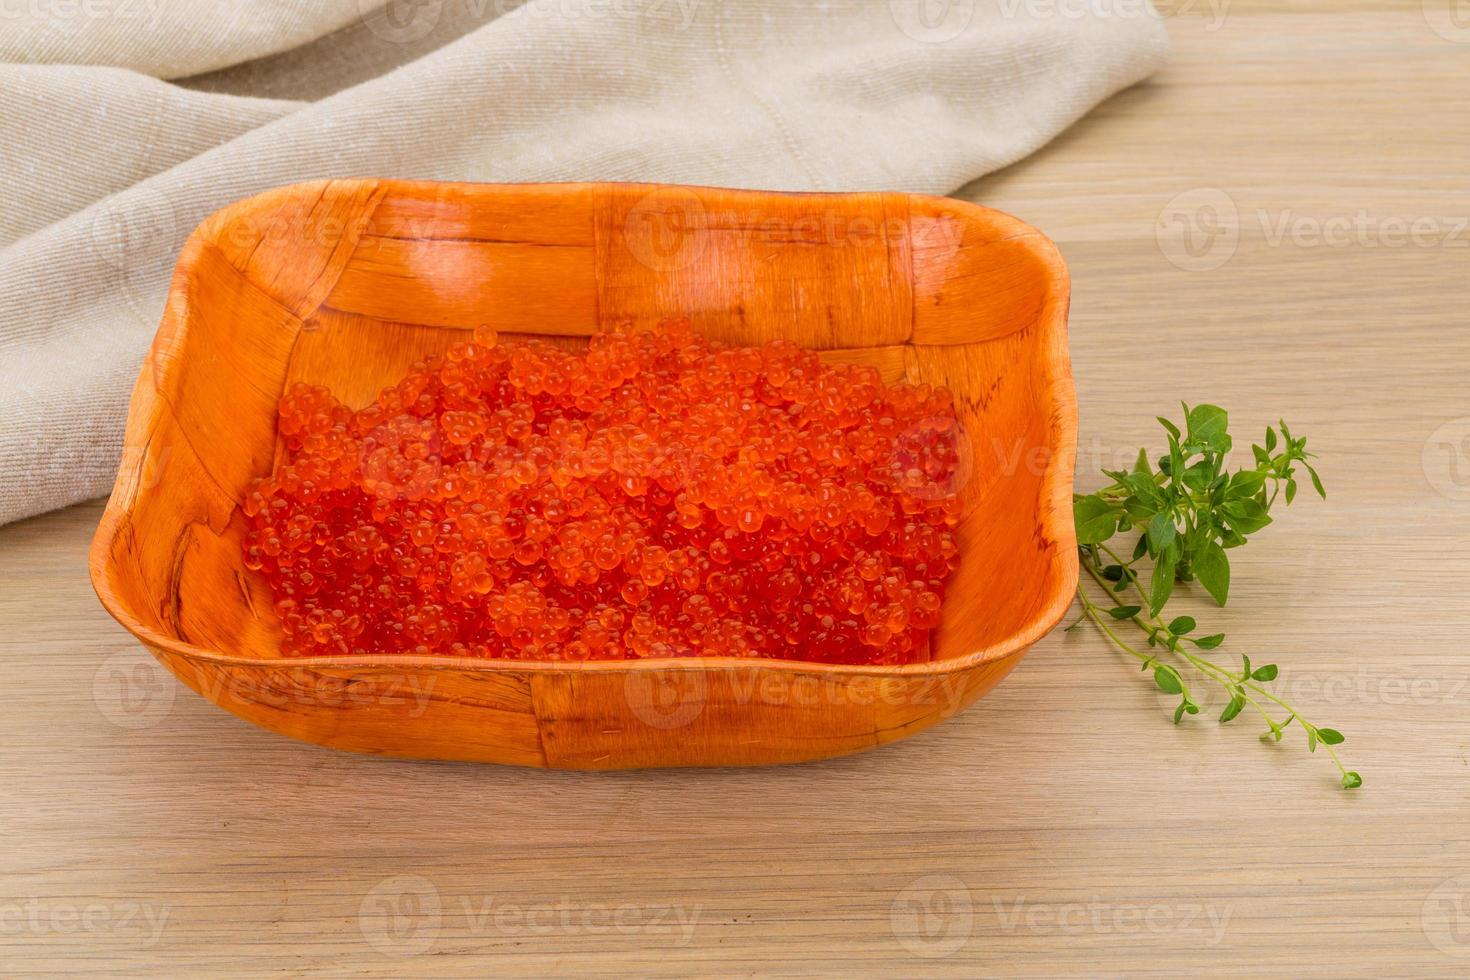 caviar rojo en un recipiente sobre fondo de madera foto